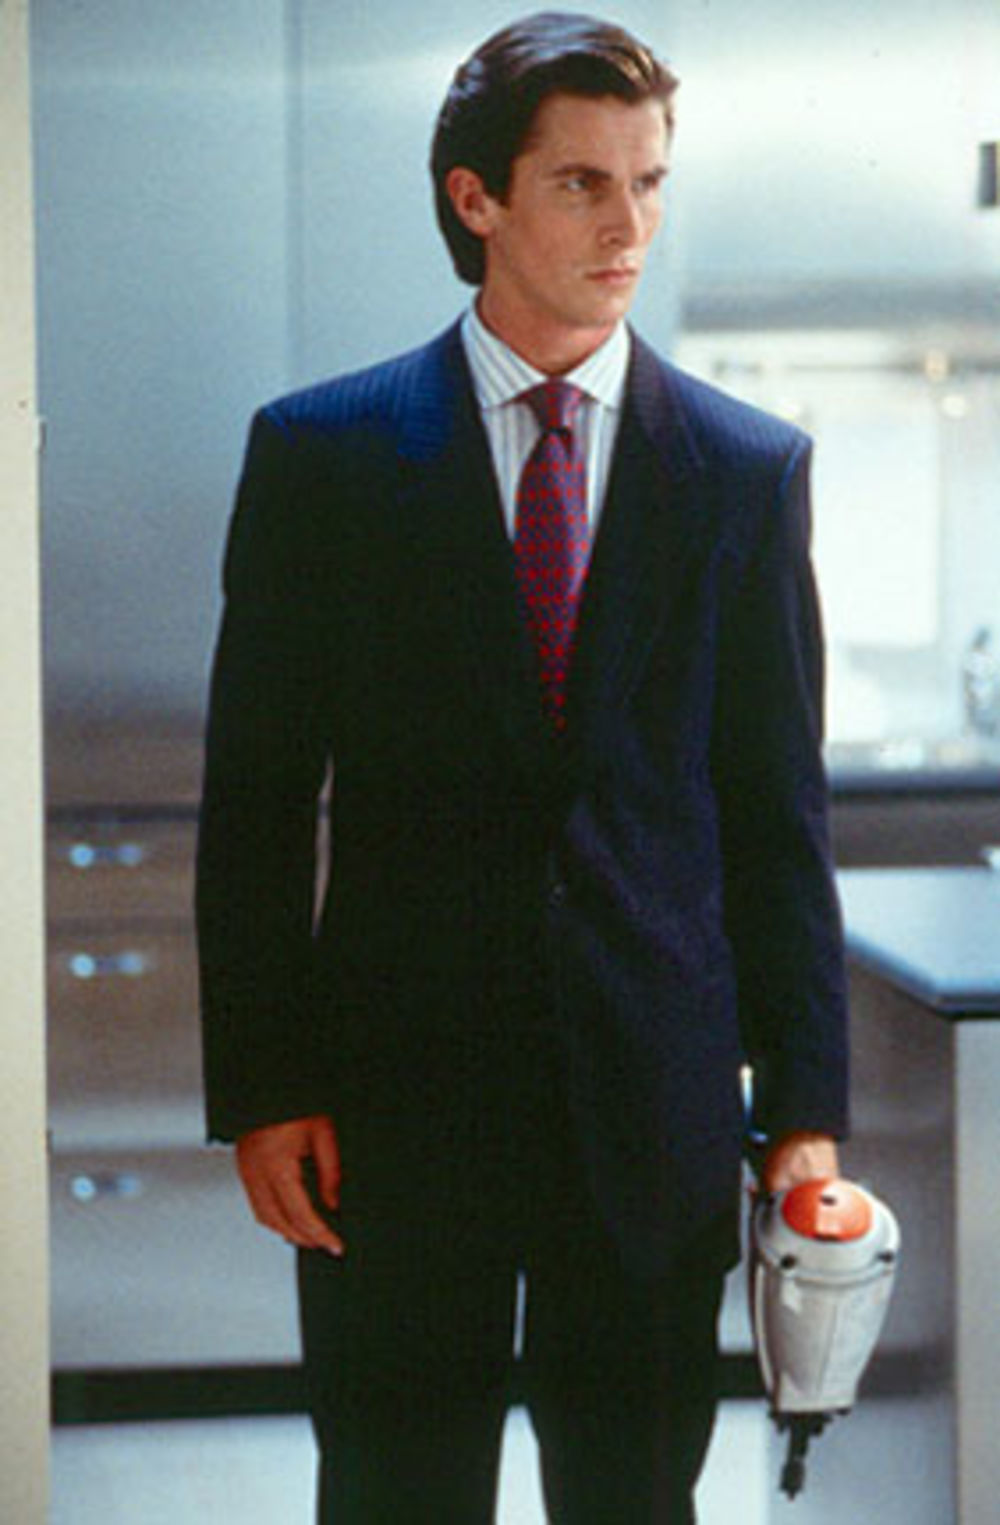 Rediteljka Meri Haron tvrdi da je Kristijan Bejl bio inspirisan Tomom Kruzom kada je kreirao lik Patrika Bejtmena u ostvarenju Američki psiho